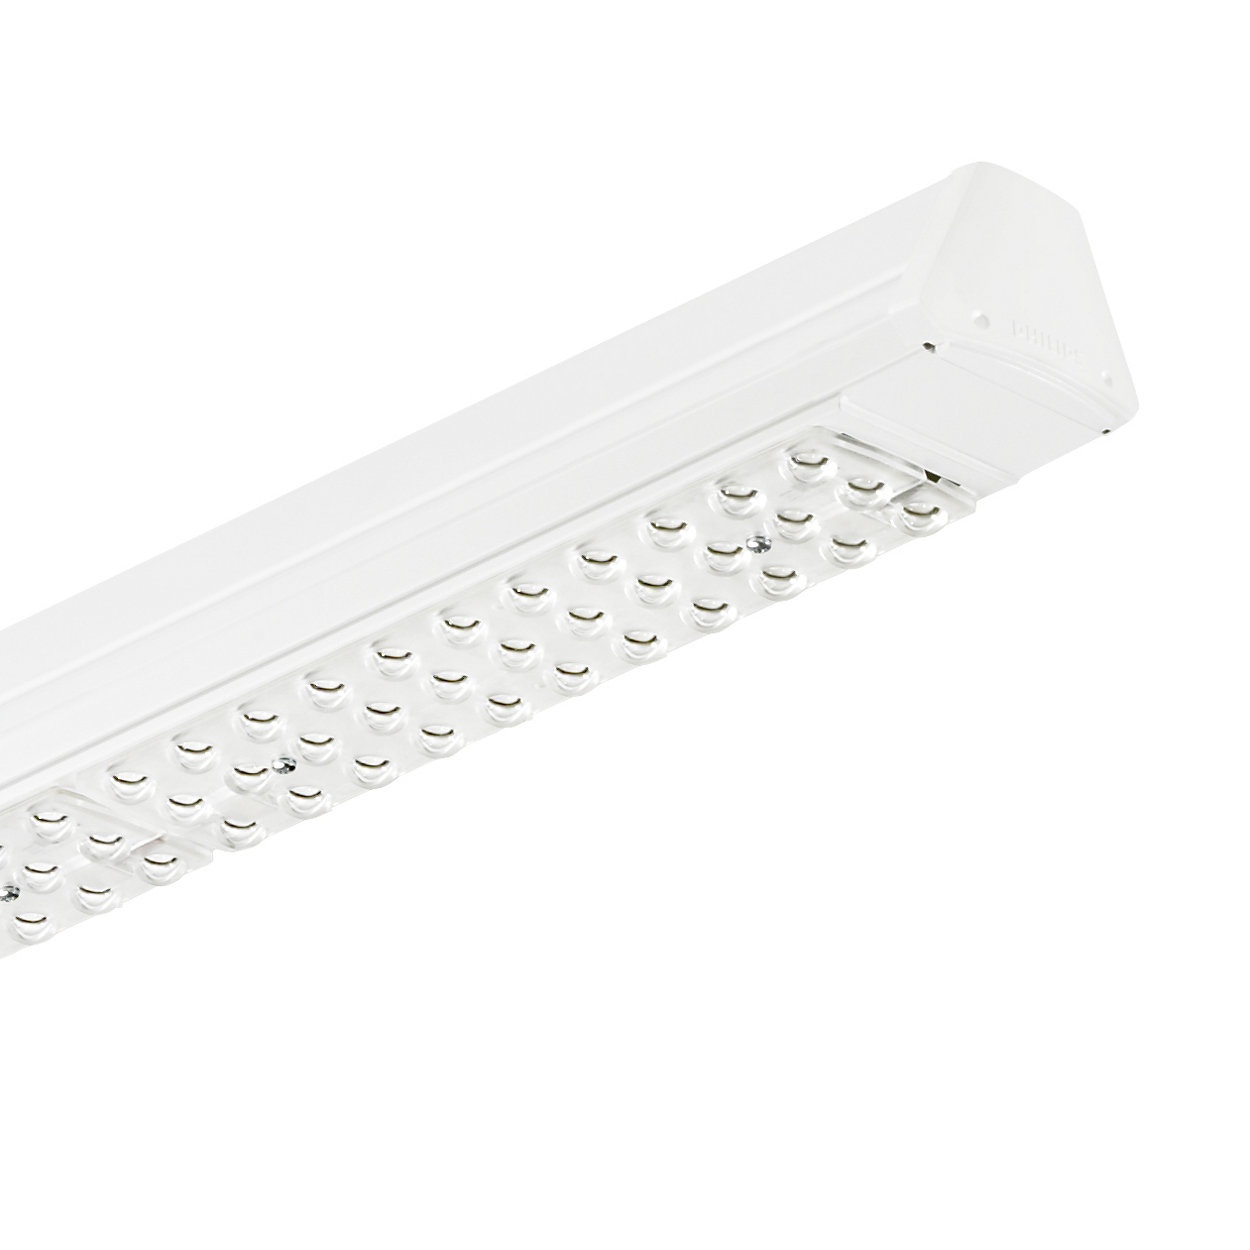 Maxos LED: solución innovadora y flexible que proporciona la potencia lumínica ideal